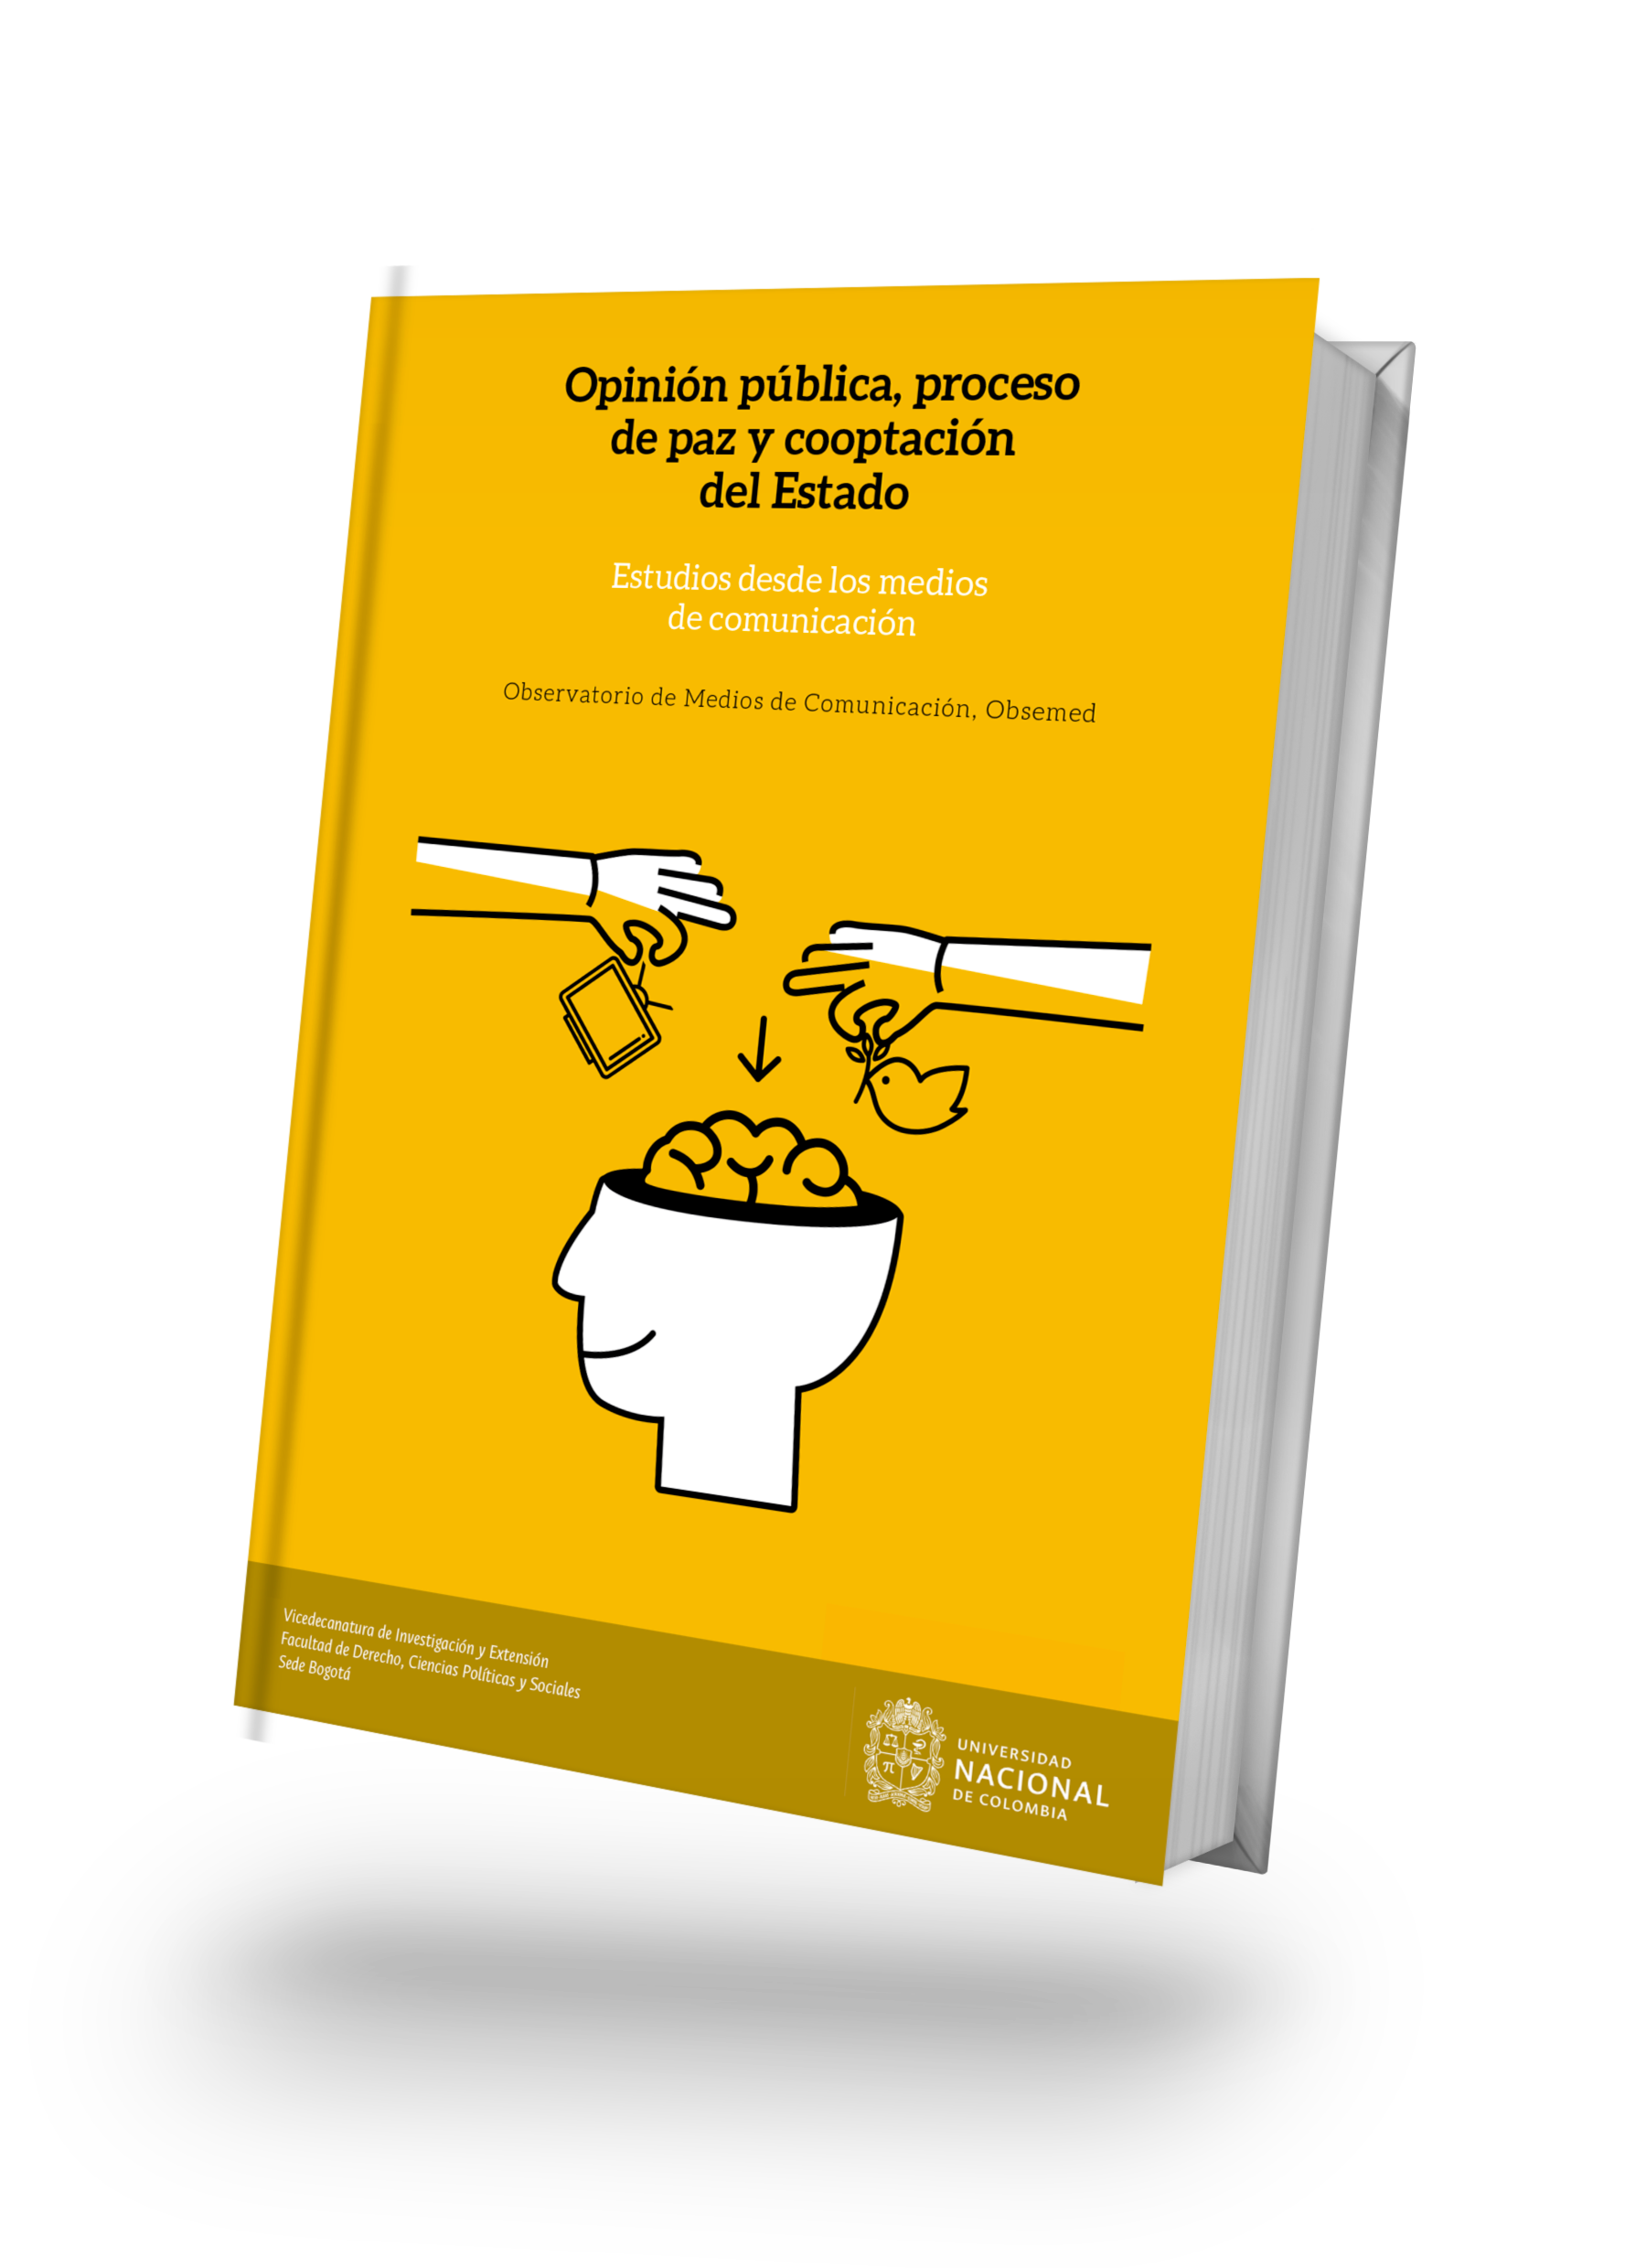 Medios de comunicación en Colombia: corrupción, captura y cooptación del Estado”, en:  Opinión pública, proceso de paz y cooptación del Estado. Estudios desde los medios de comunicación